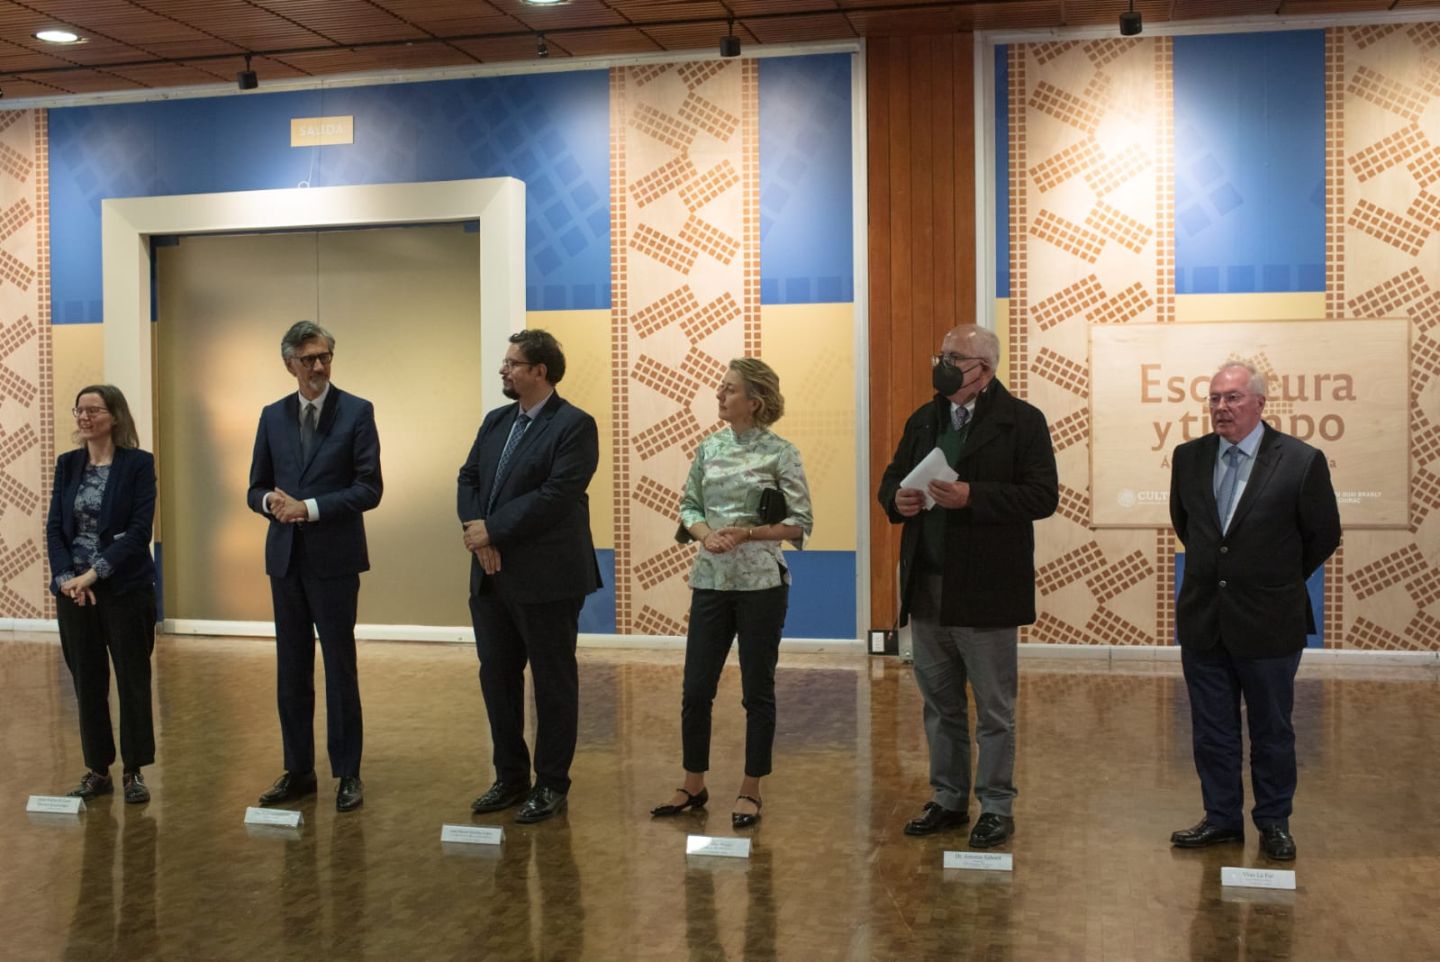 Centenar de obras de África, América y Oceanía dialoga en el Museo Nacional de Antropología